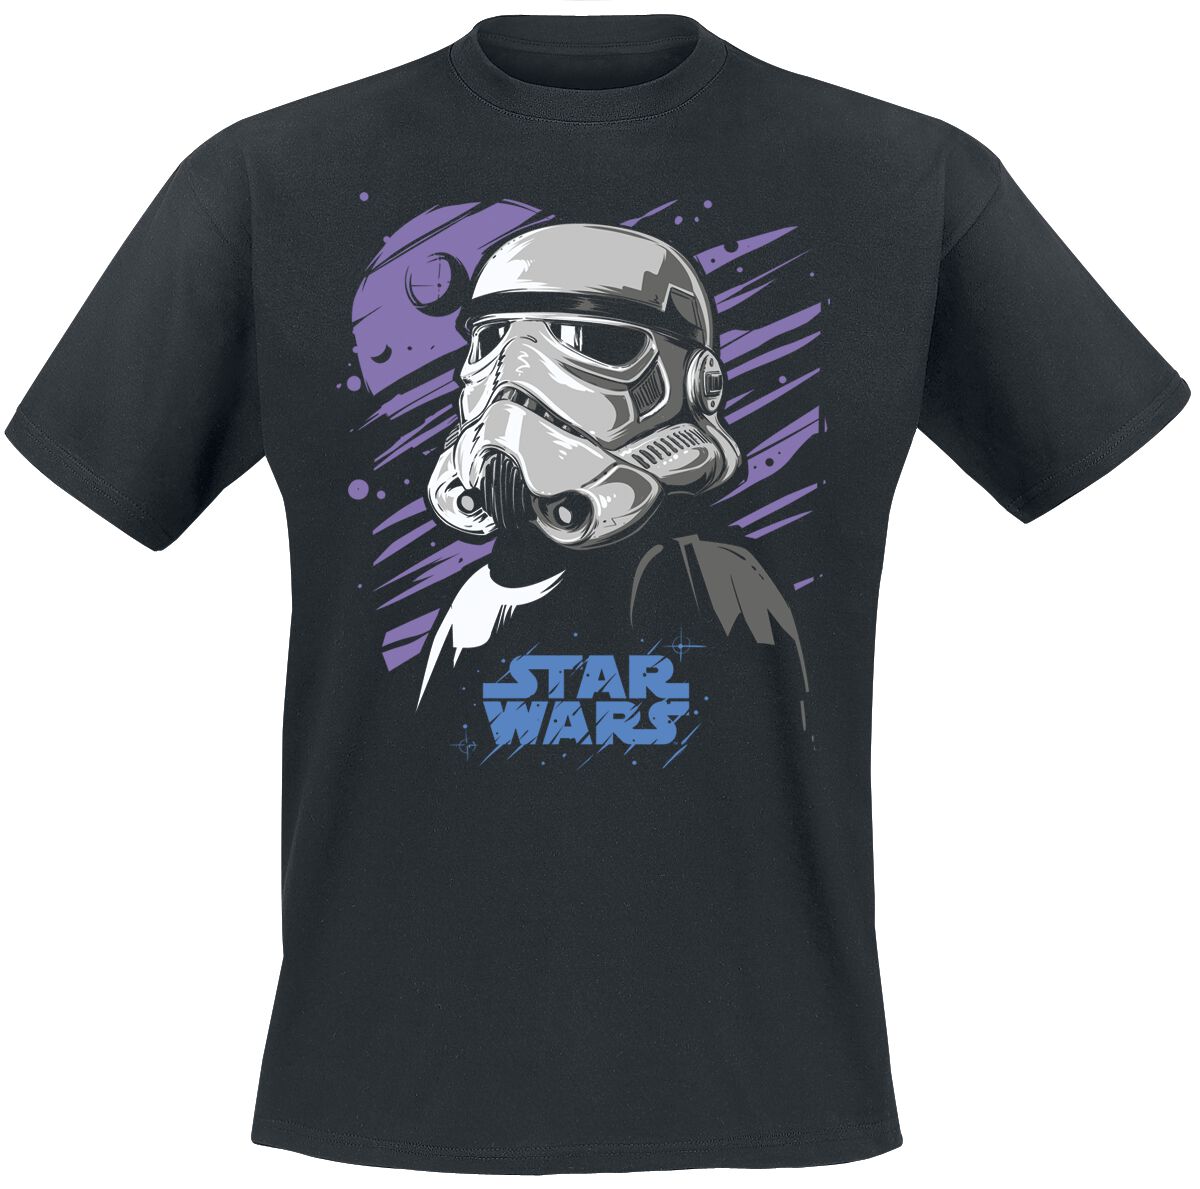 Star Wars T-Shirt - Galaxy Stormtrooper - M bis 5XL - für Männer - Größe XXL - schwarz  - Lizenzierter Fanartikel